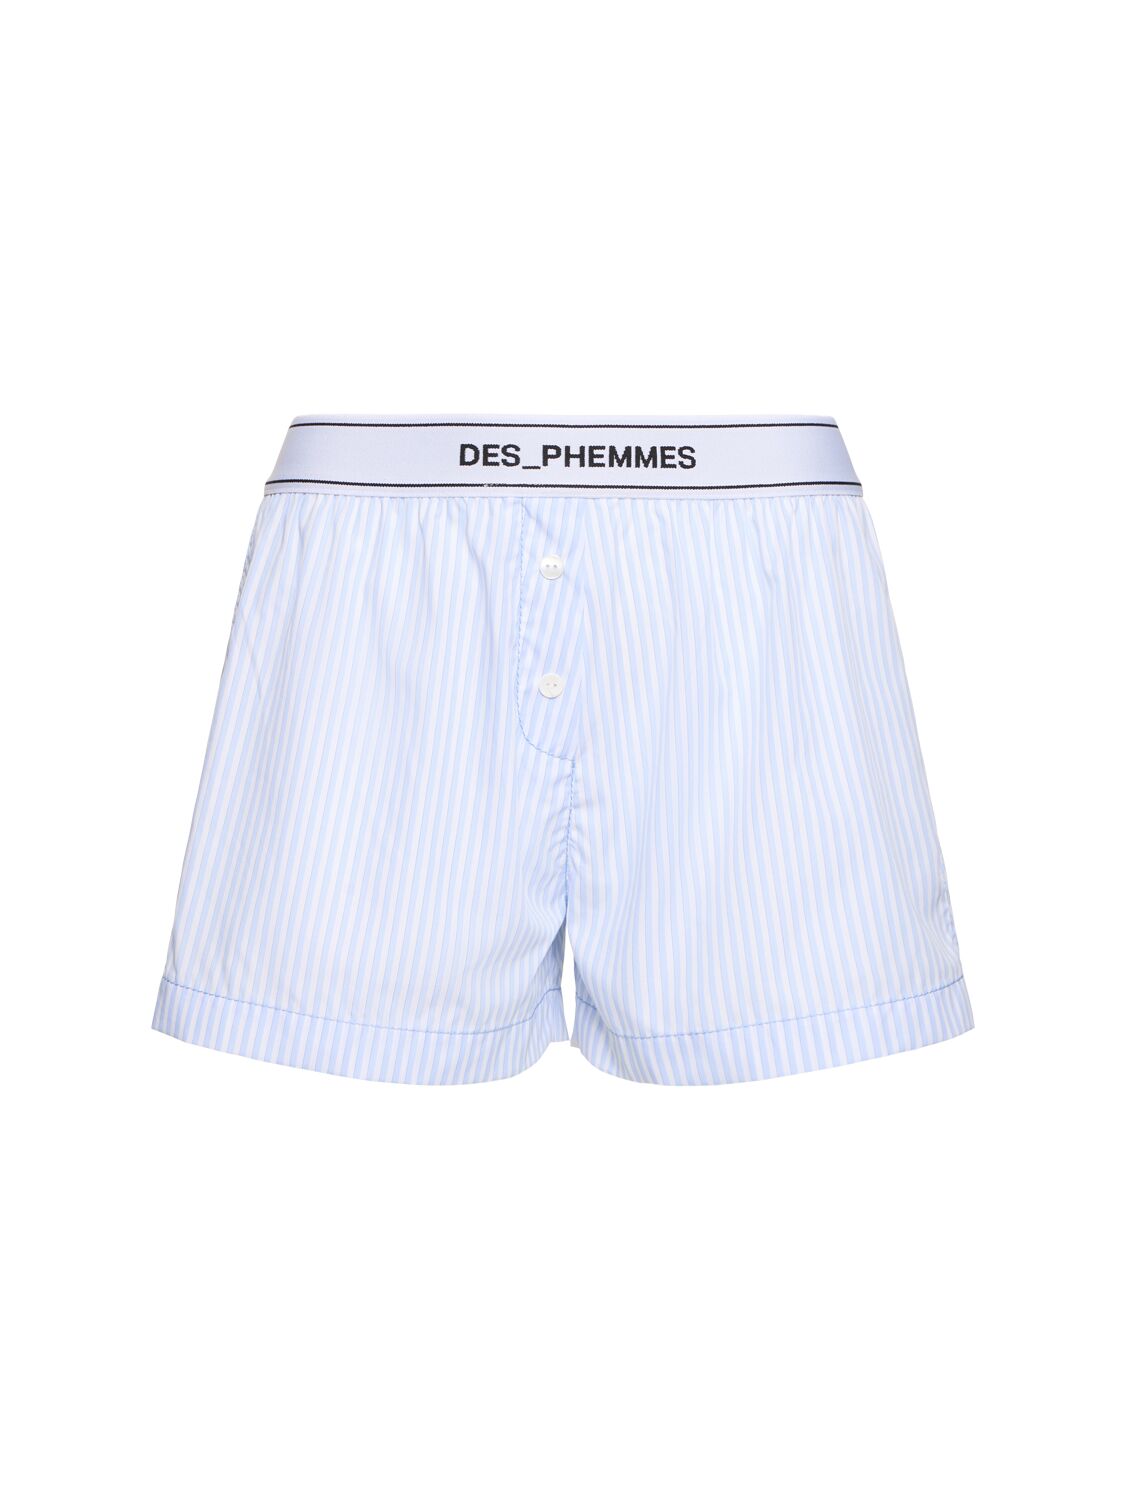 Des Phemmes Striped Poplin Oversized Shorts In Light Blue,white